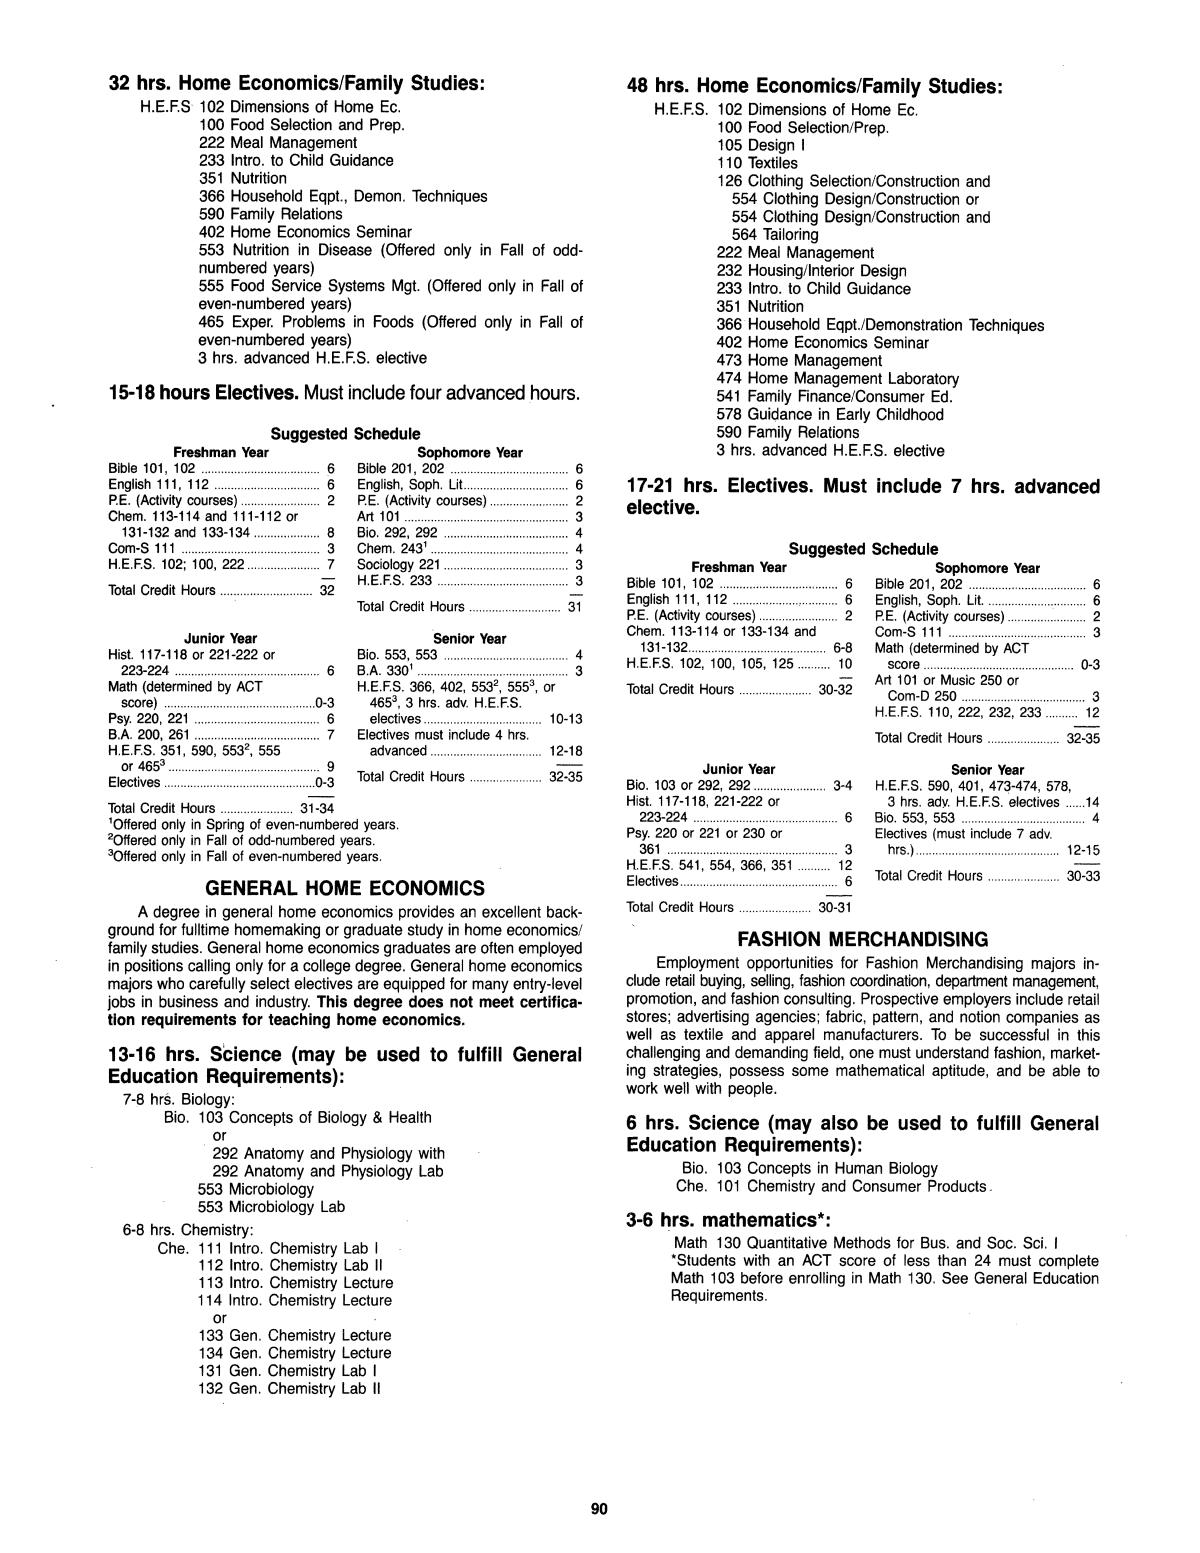 Catalog of Abilene Christian University, 1985-1986
                                                
                                                    90
                                                